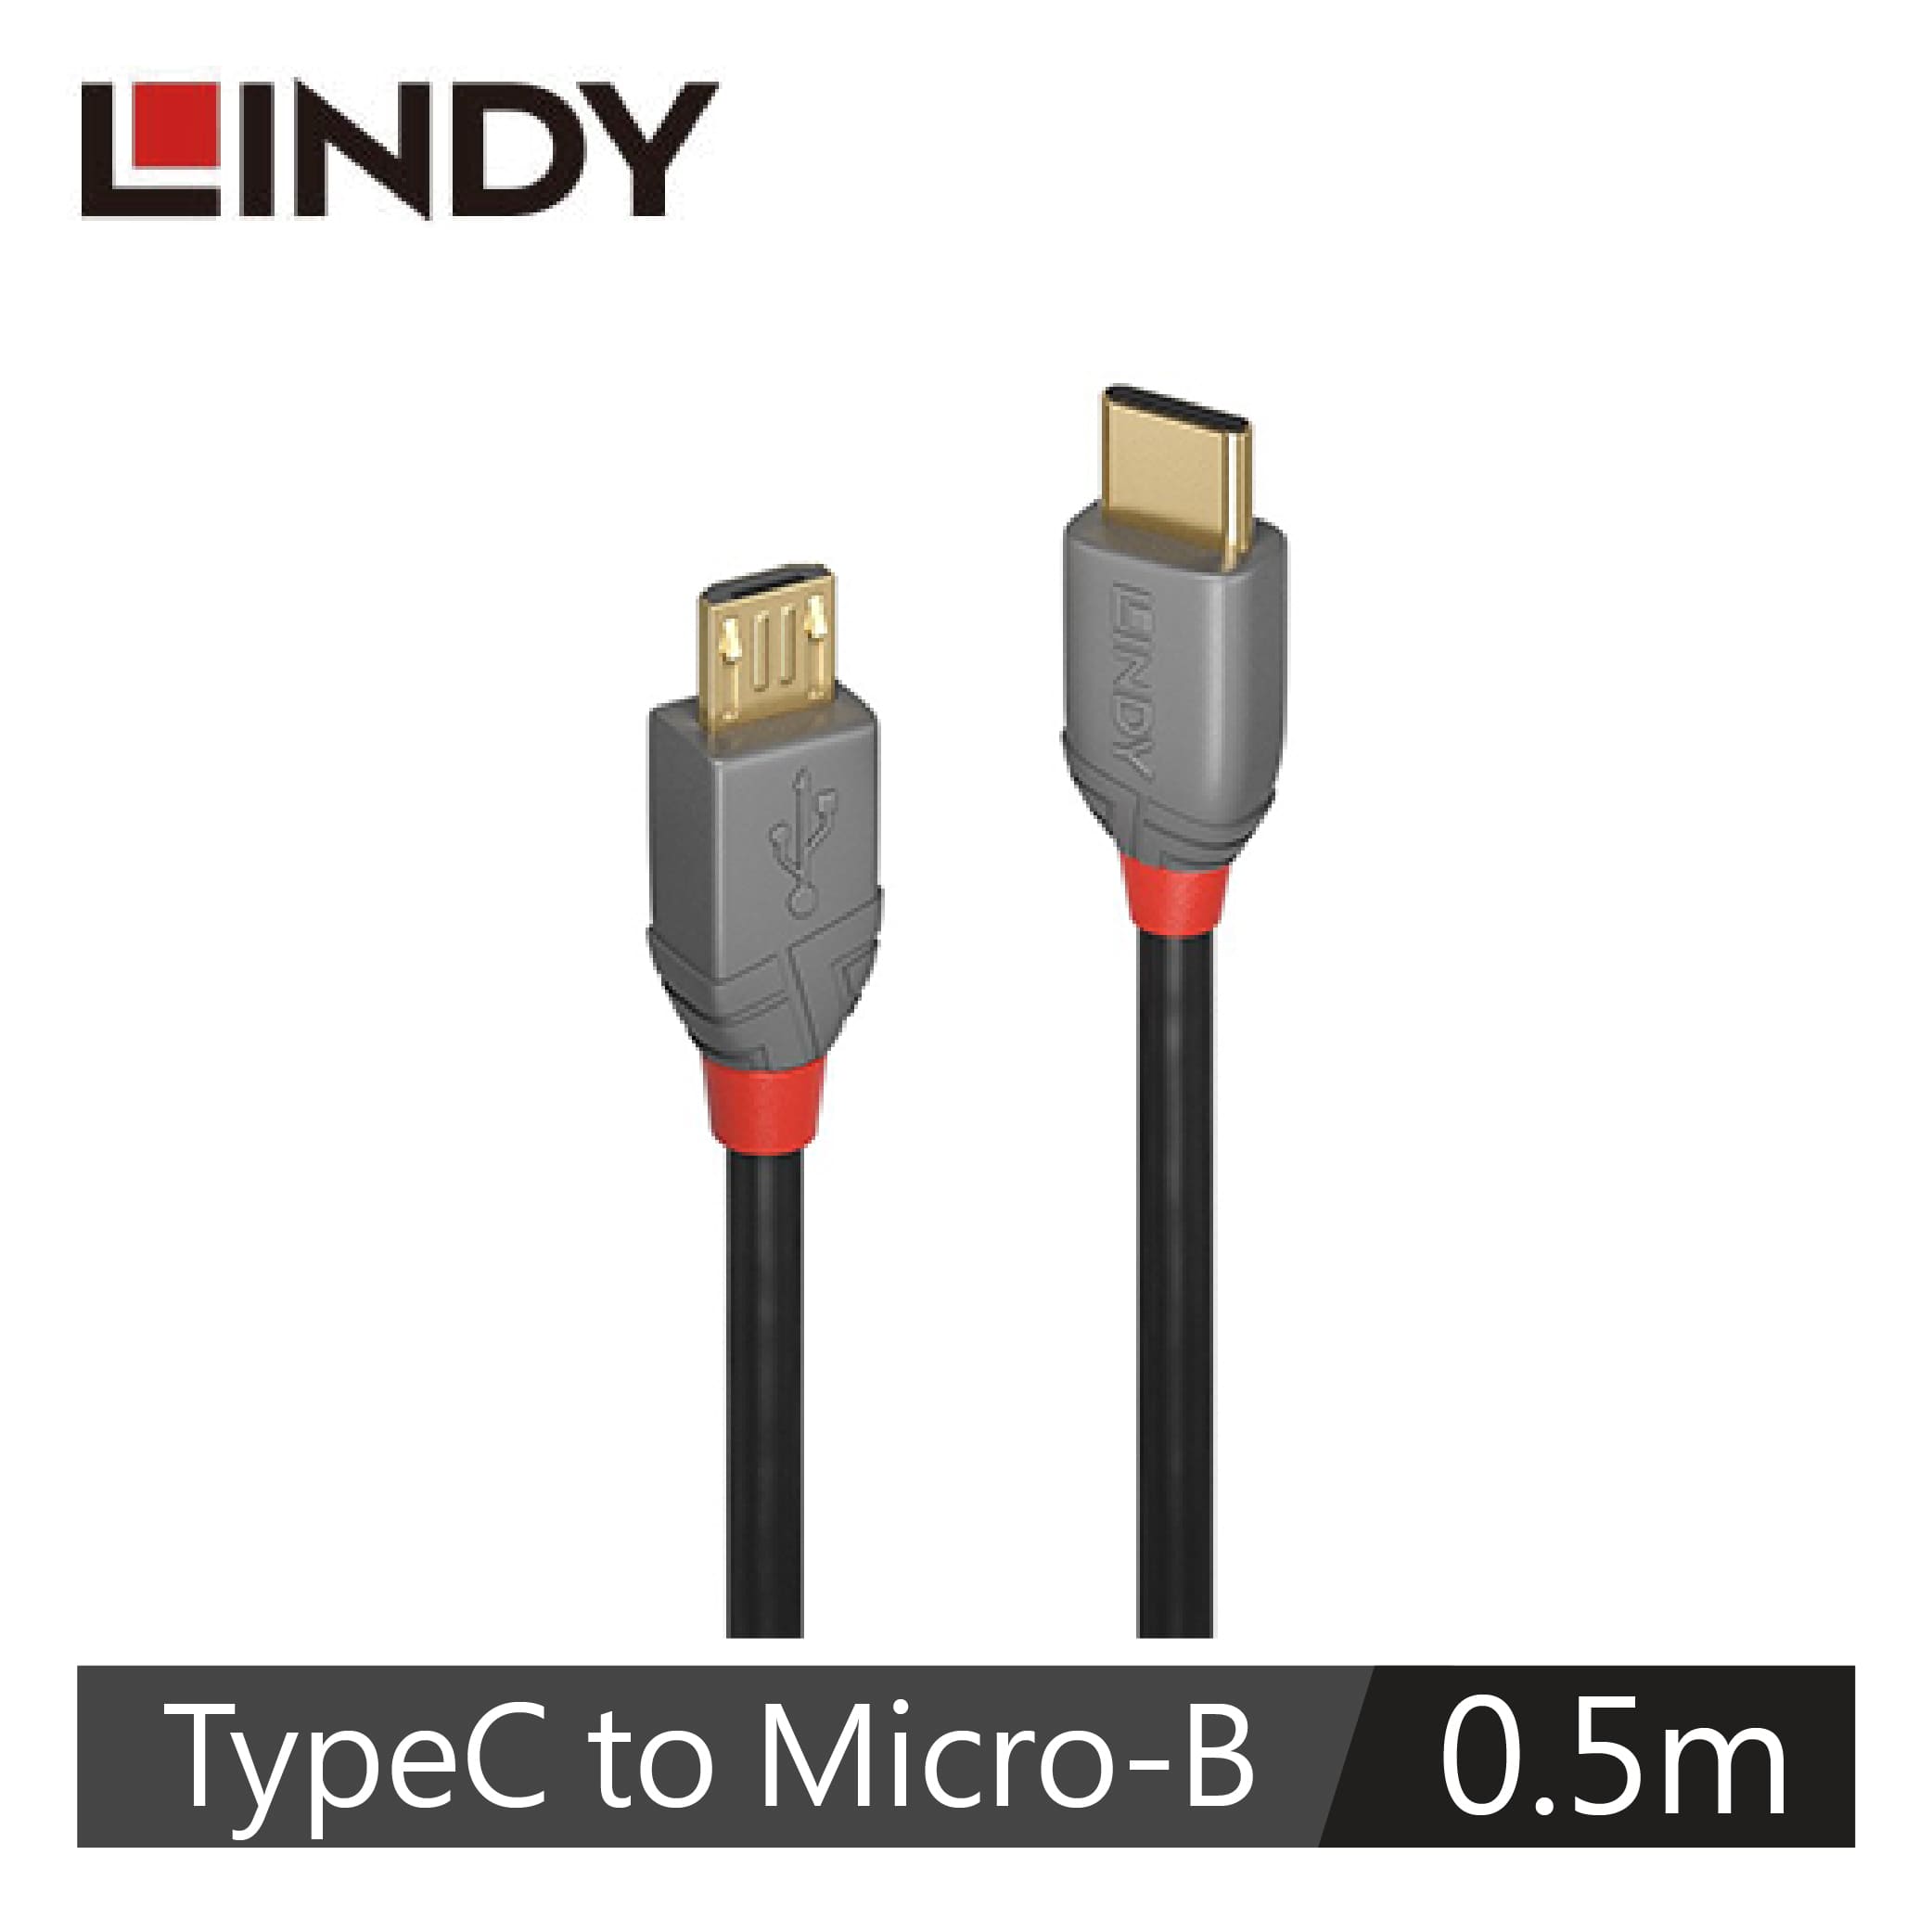 LINDY林帝 USB2.0 TYPE-C/公 TO MICRO-B/公 傳輸線, 0.5M